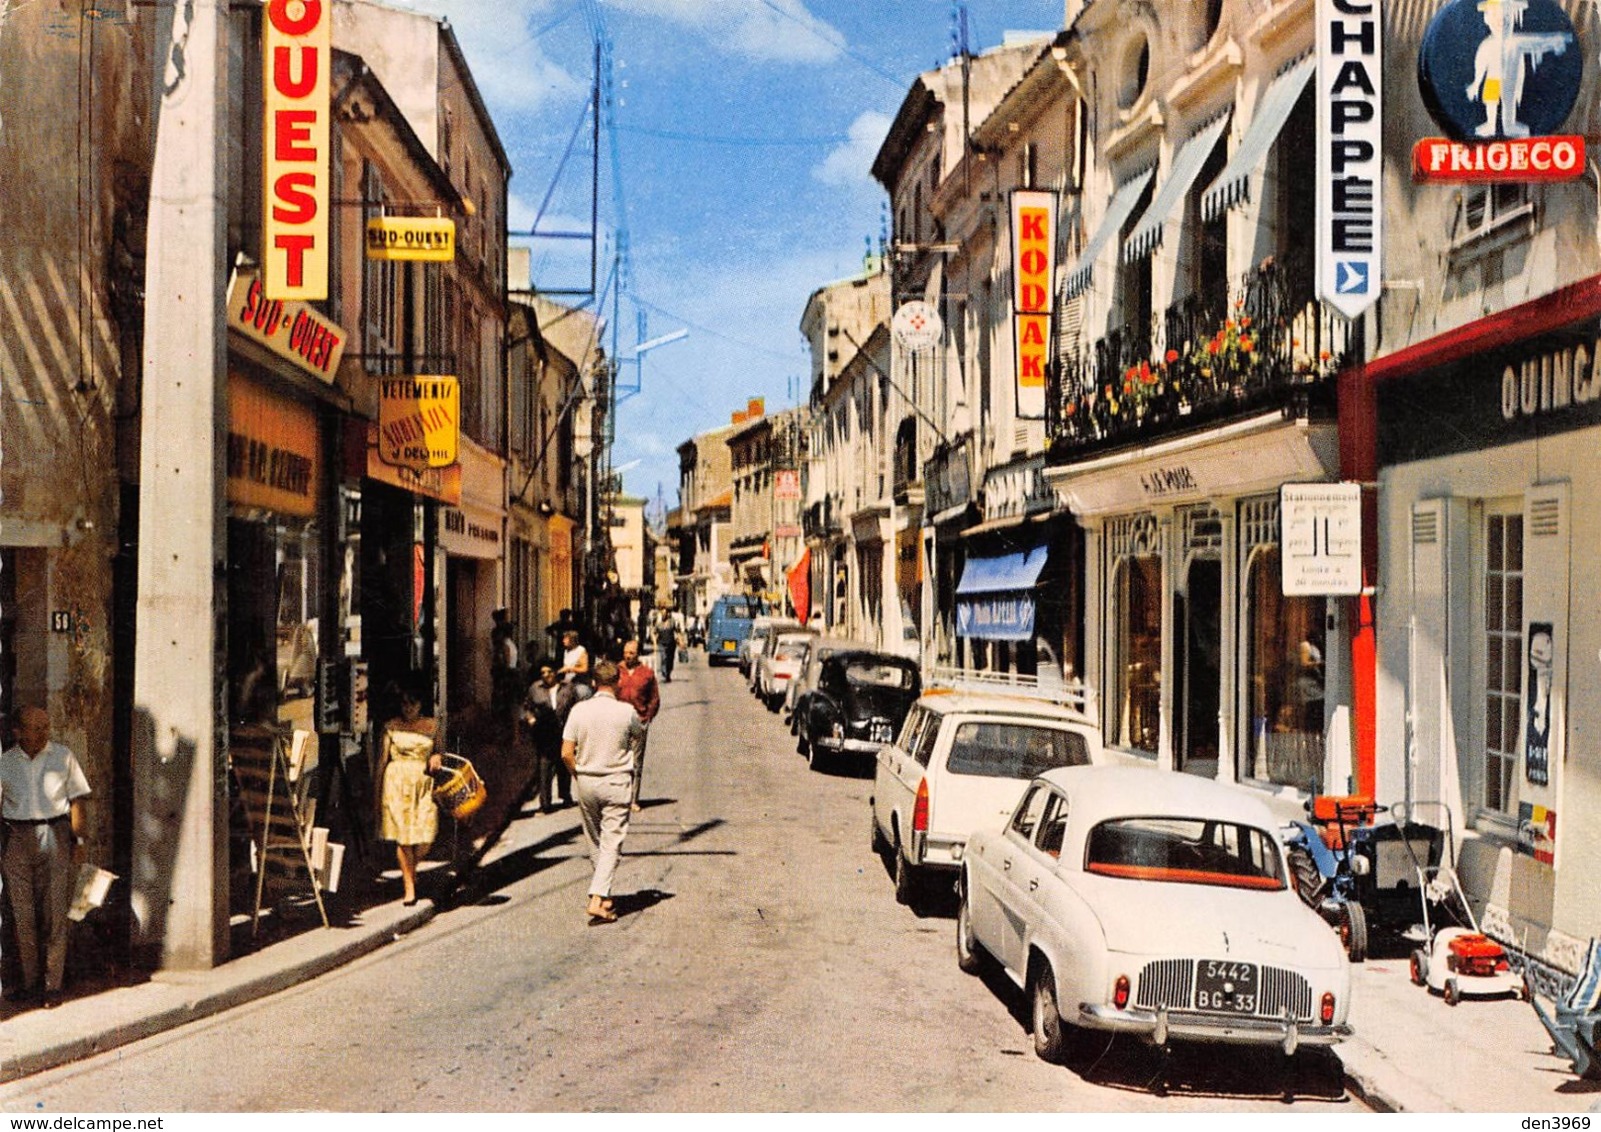 LESPARRE-MEDOC - La Rue J.-J.-Rousseau - Automobiles "5442 BG 33" - Publicité Kodak - Lesparre Medoc